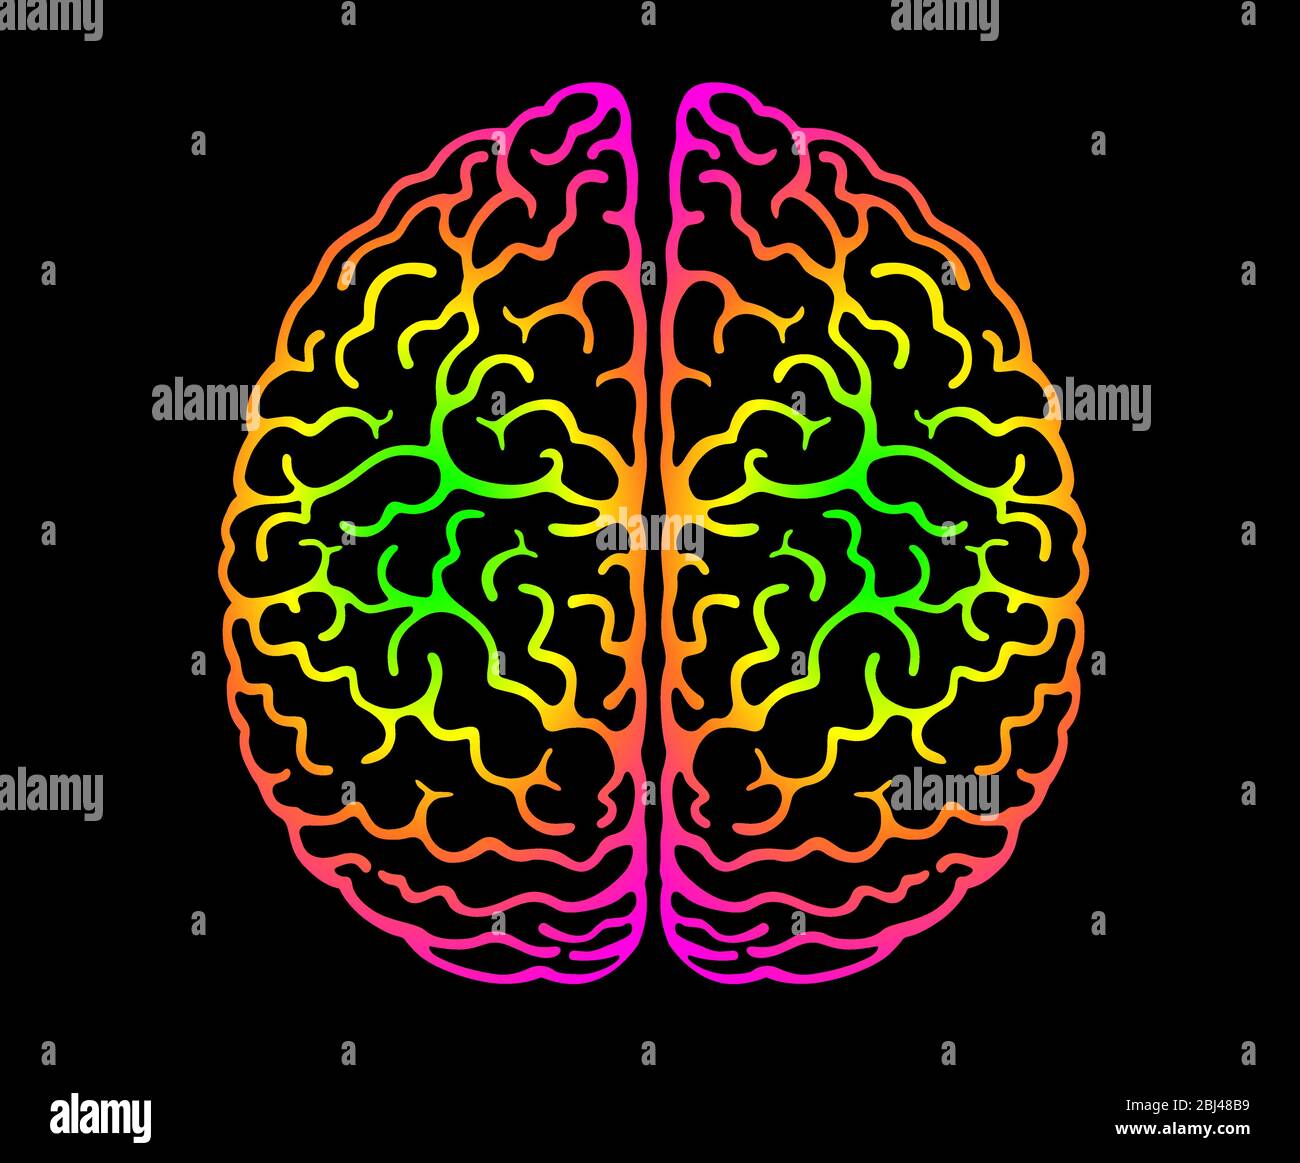 Menschliches Gehirn. Helle Farben Schwarzer Hintergrund. Gehirnhälften, Verwicklungen des Geistes Gehirn, Gehirnbeugen. Ansicht Von Oben, Vorderansicht, Realist Stock Vektor